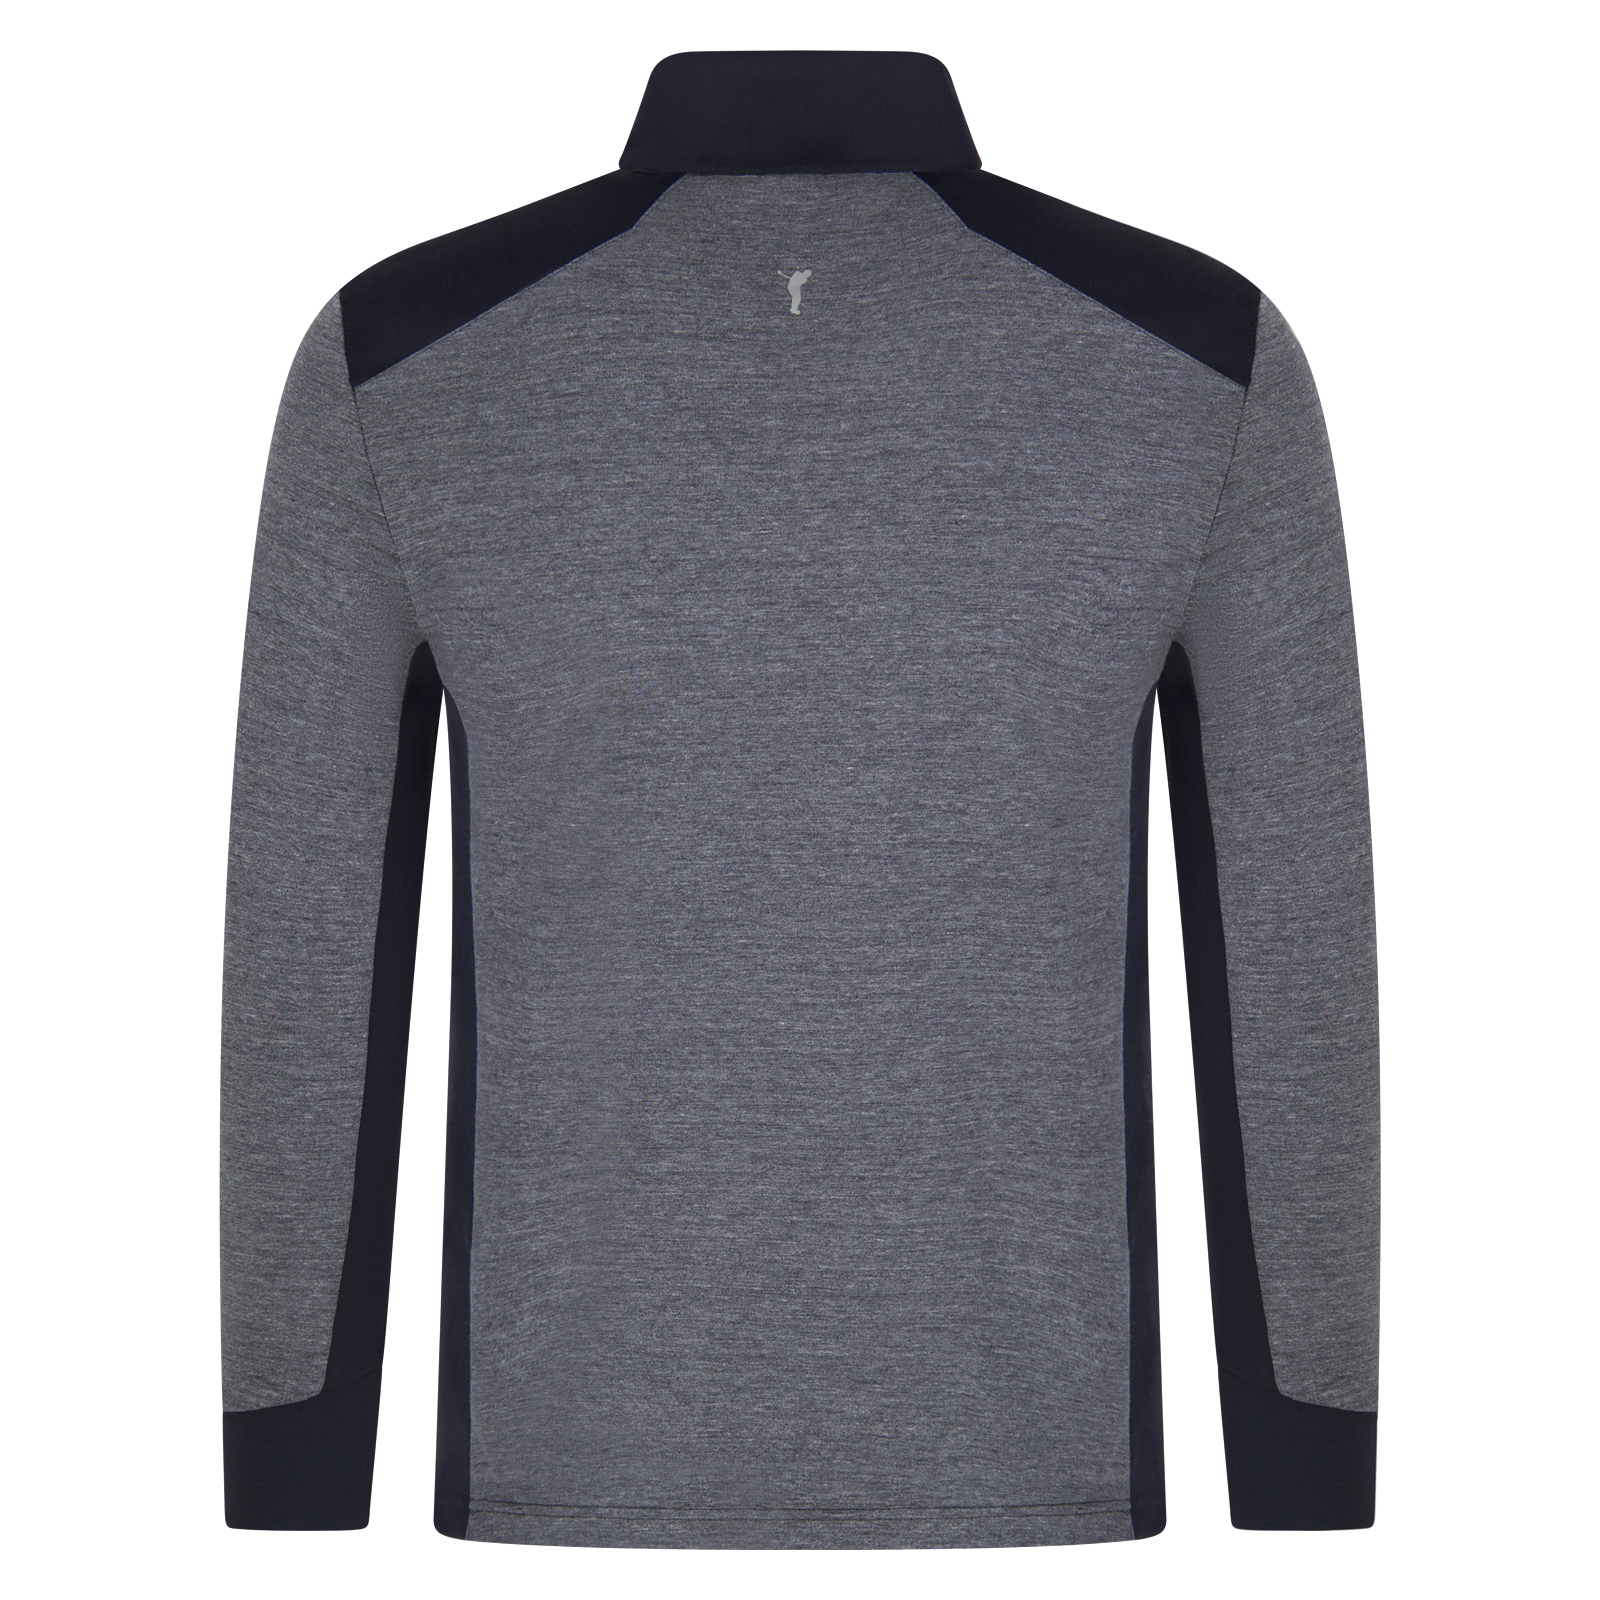 Jersey de golf elástico como capa intermedia con la innovadora tecnología Q-Skin® para hombre